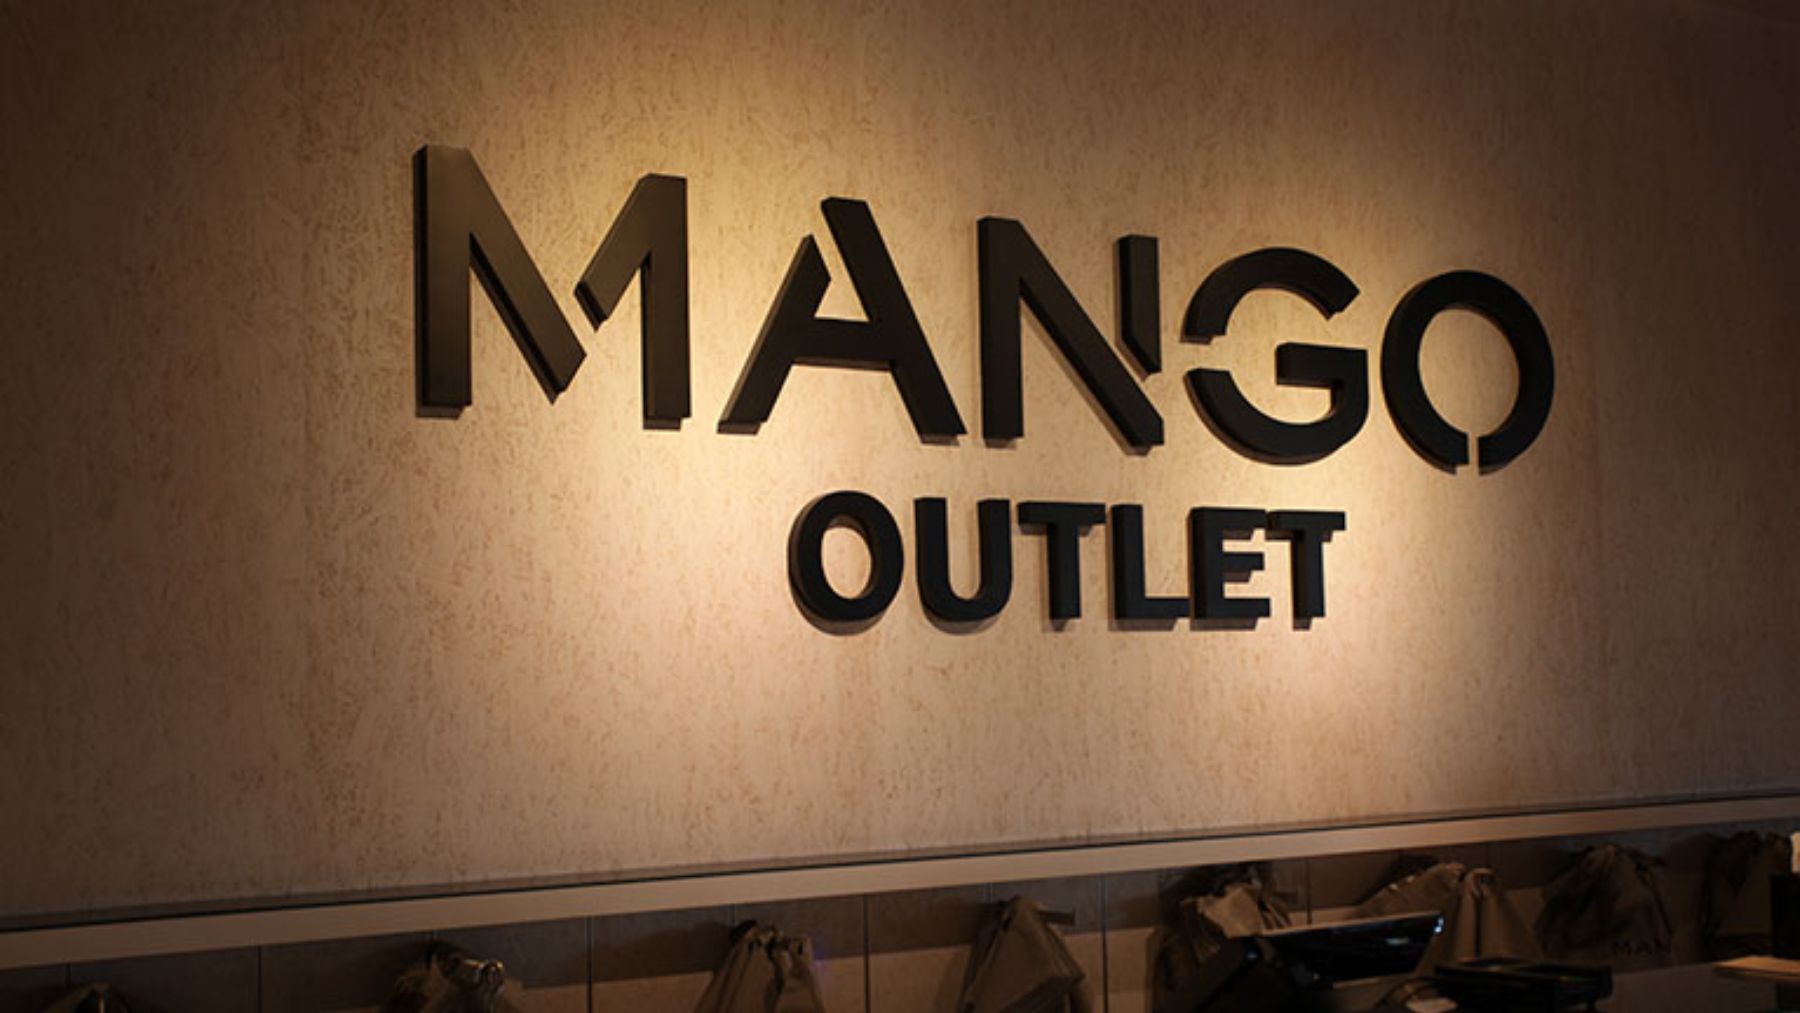 Descubrimos el total look de Mango Outlet ideal de otoño